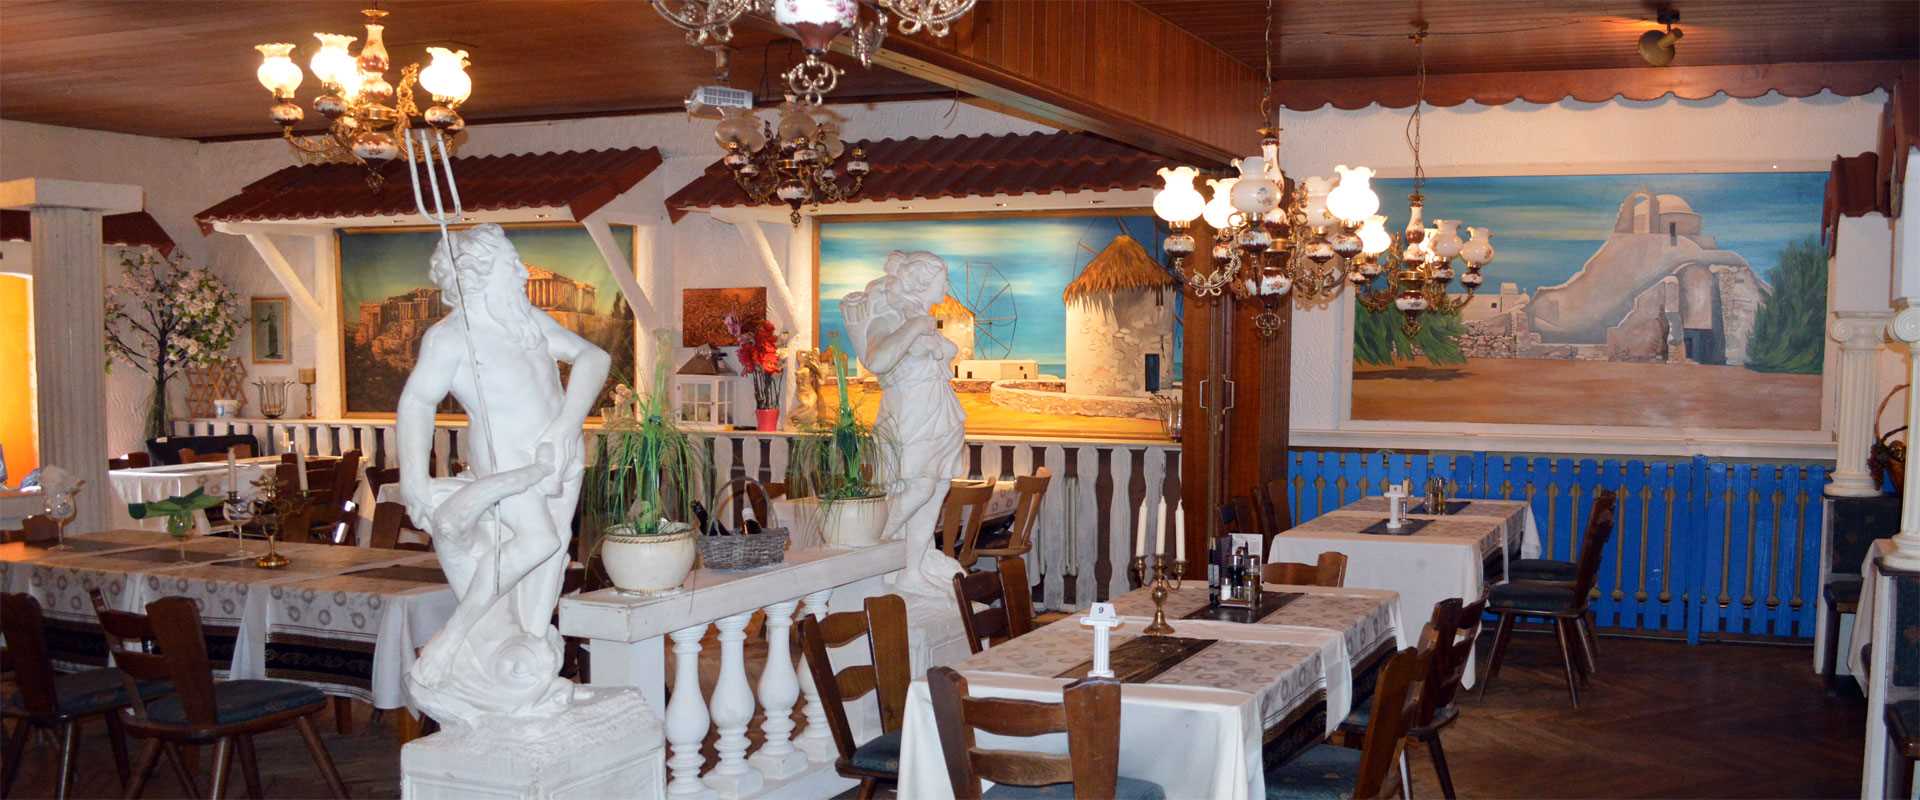 Griechisches Restaurant-Taverne Alt Athen in Rodgau-Rollwald0